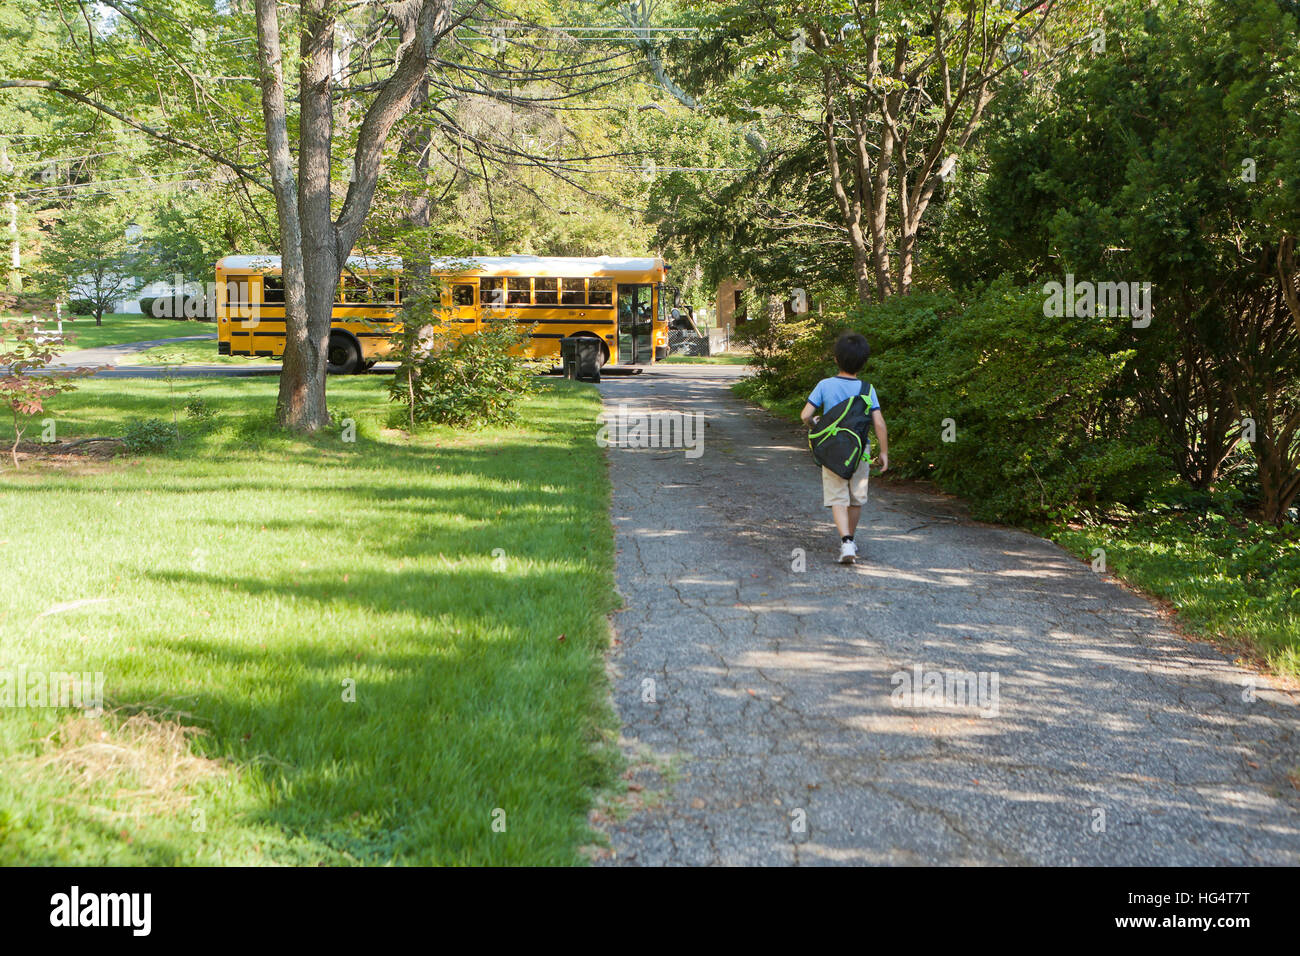 Volksschule Student auf dem Weg zum Schulbus - USA Stockfoto